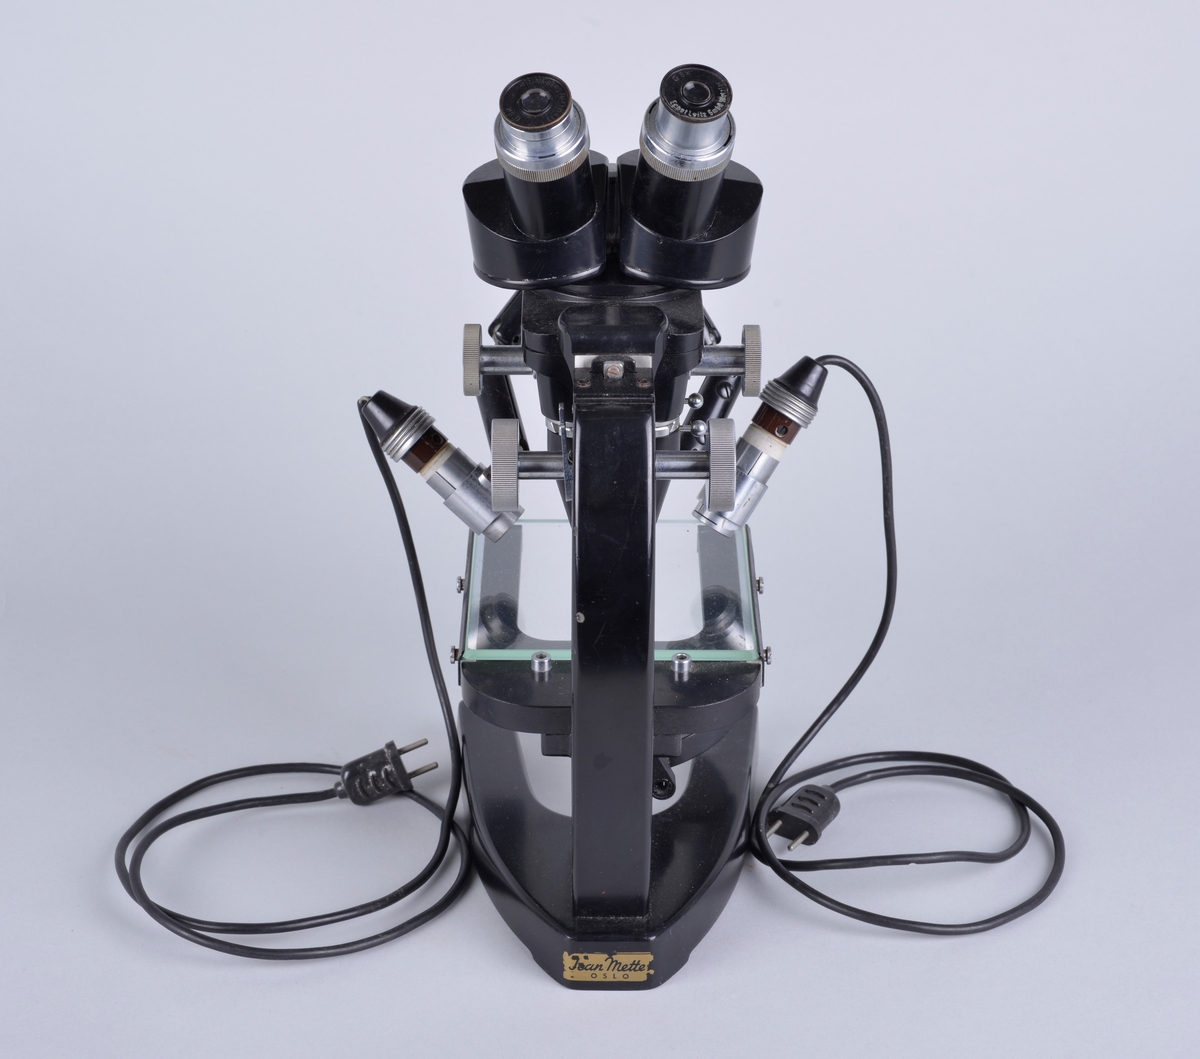 Binokulært mikroskop, har to okularer for bruk med begge øyne.
Apparatet er produsert i Tyskeland og brukt av Vetrinærinstituttets fagfolk. 

Chassiet er muligens laget i stål, svartlakkert.